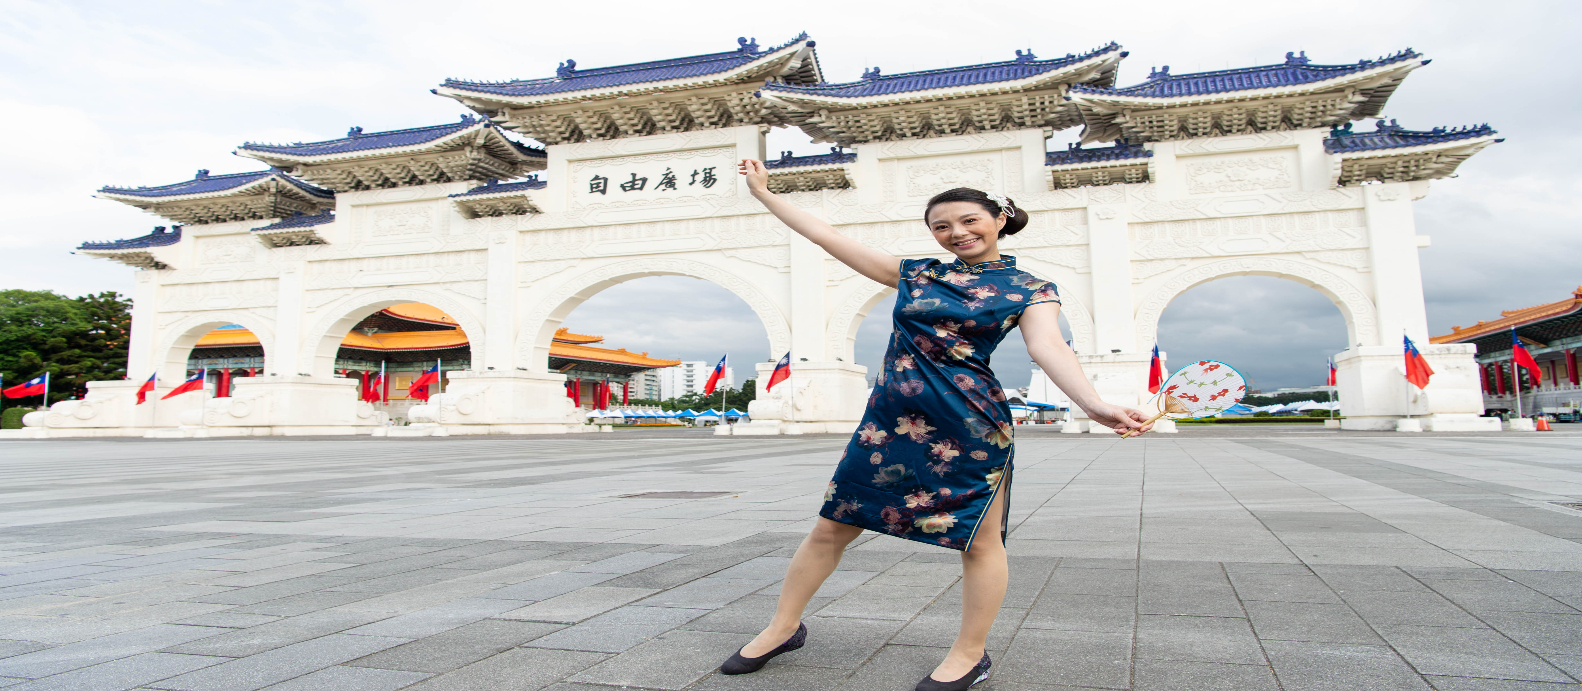 現地体験オプショナルツアー予約 トリップレックス 海外旅行のstw 台北 チャイナドレスレンタルプラン 鮮やかなチャイナドレス を身に纏って台北の街を散策しよう